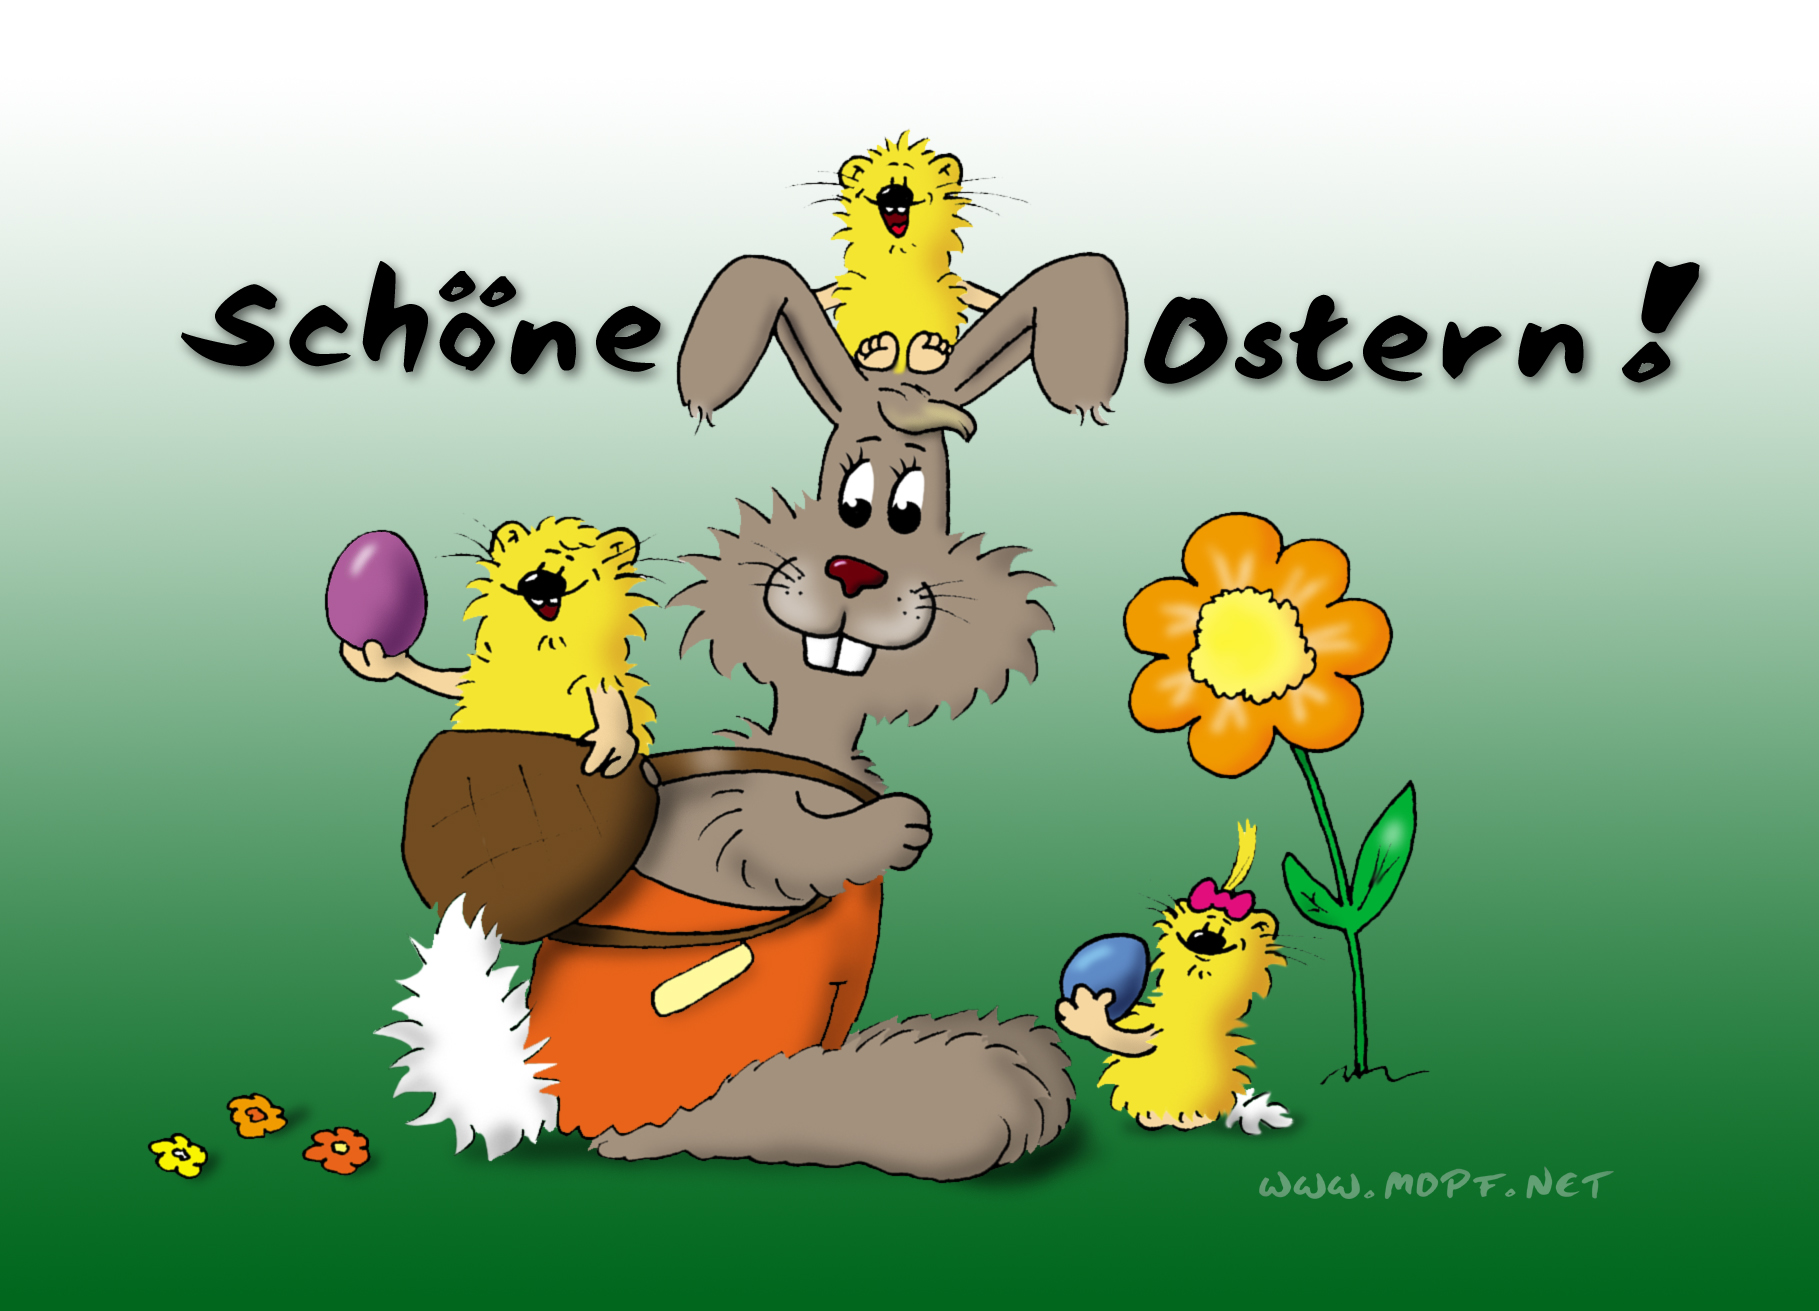 Schöne Ostern Euch allen! 